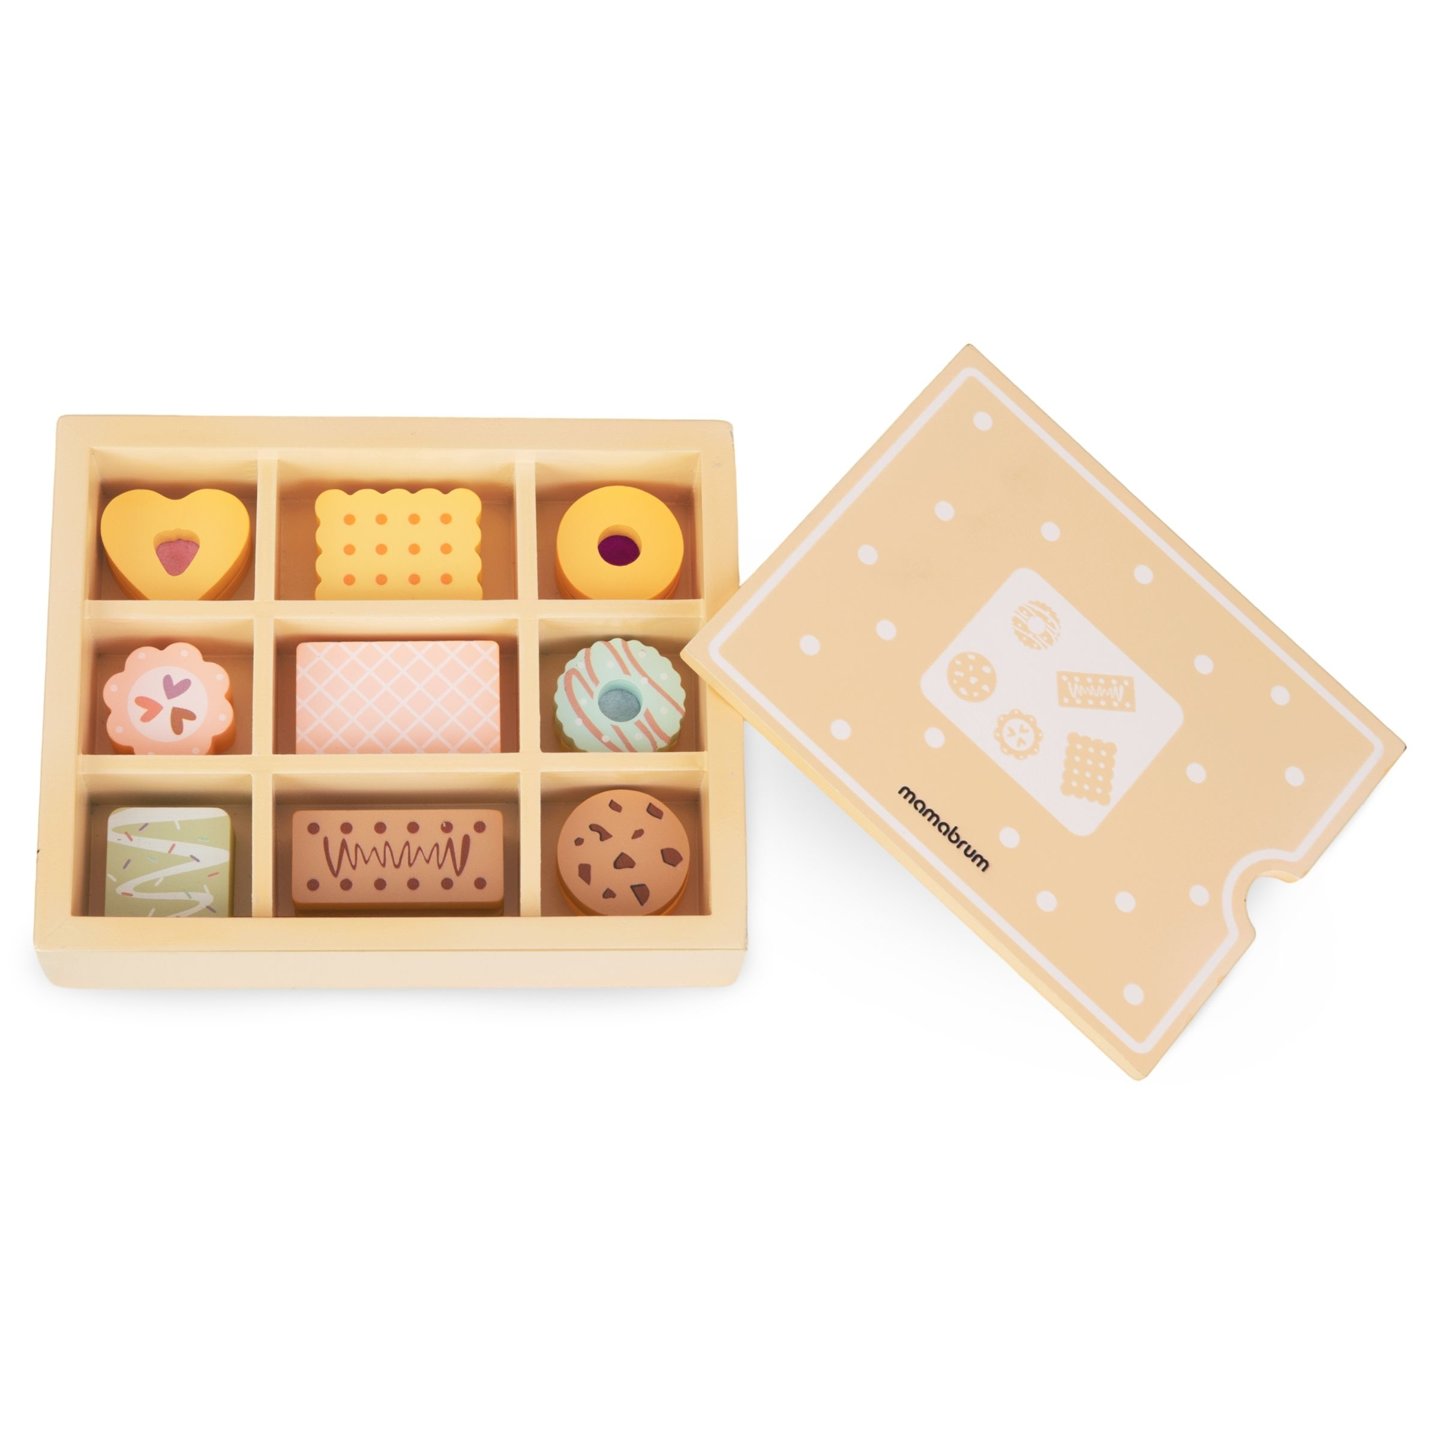 Drewniane pudełko z ciastkami - zestaw dla dzieci